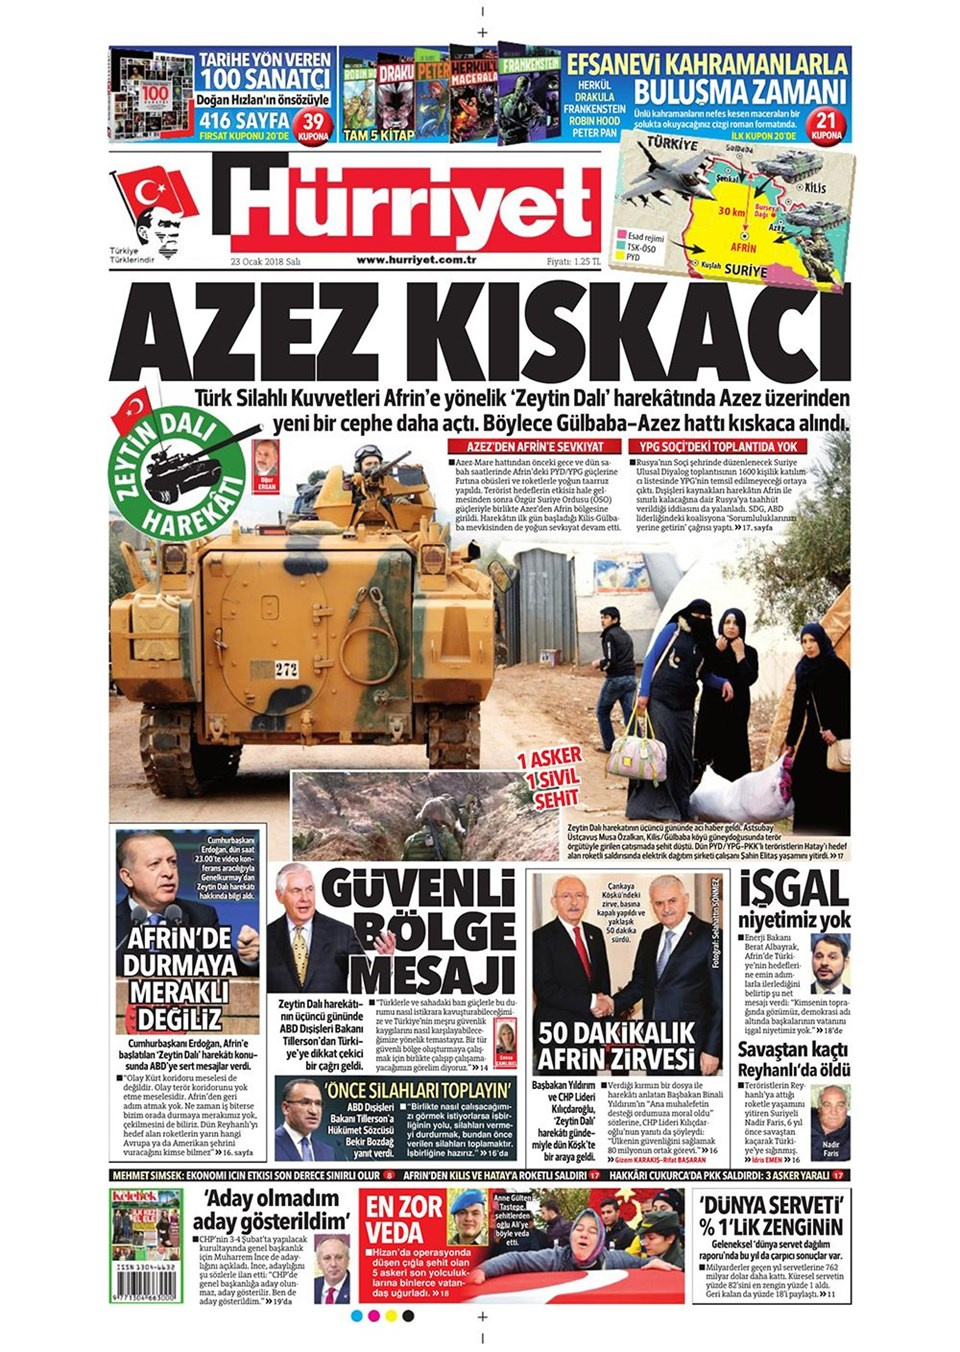 Gazete manşetleri Hürriyet - Fotomaç - Sözcü 23 Ocak 2018